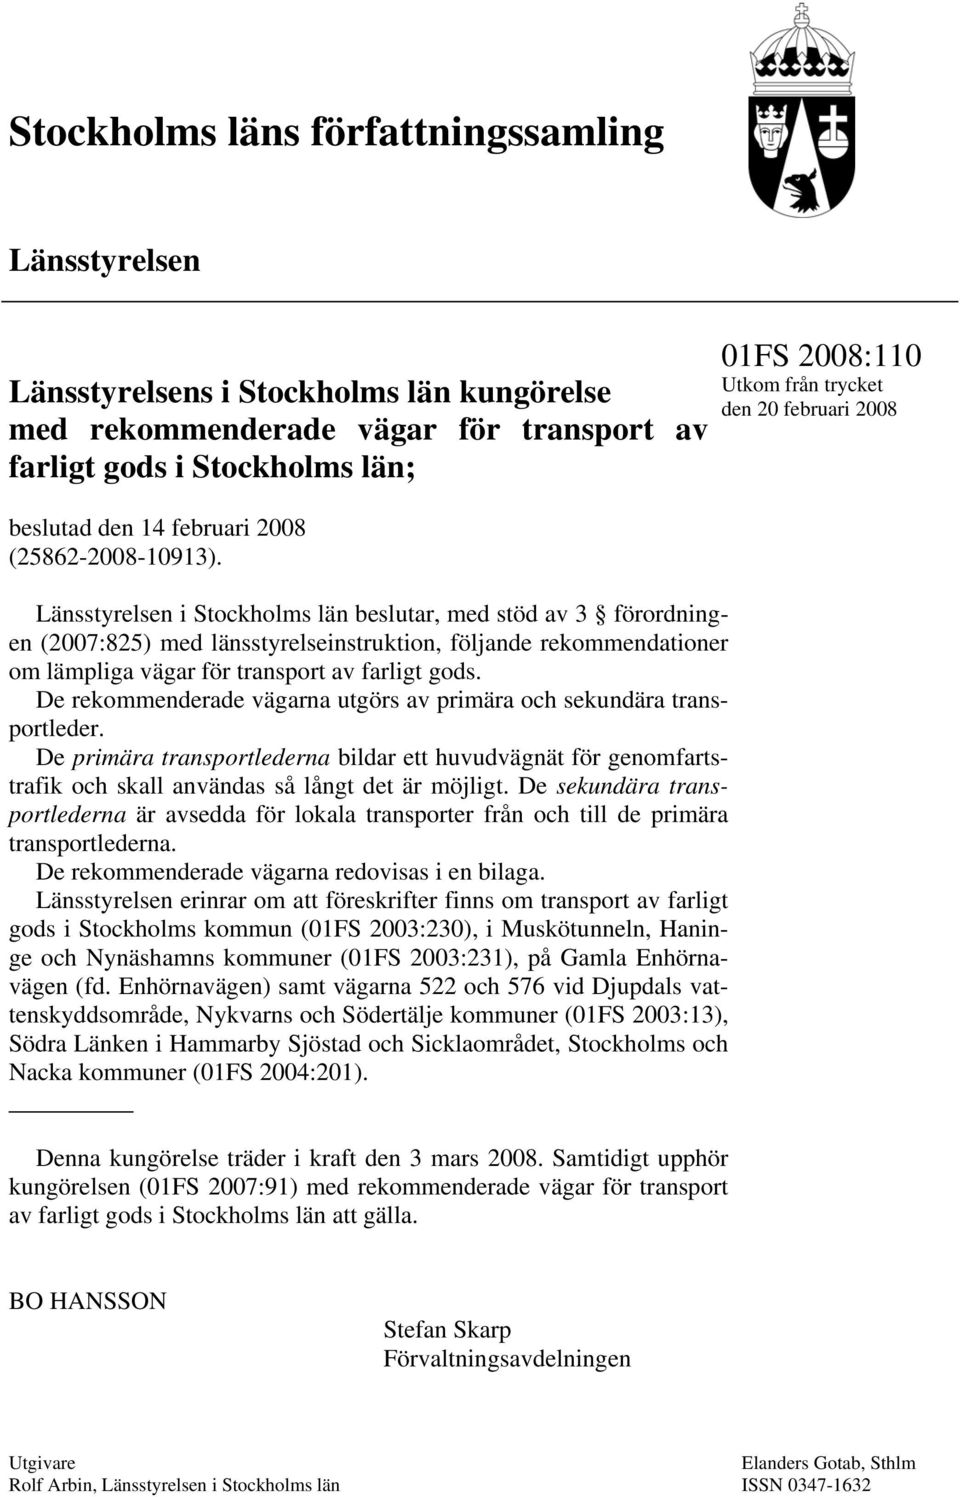 Länsstyrelsen i Stockholms län beslutar, med stöd av 3 förordningen (2007:825) med länsstyrelseinstruktion, följande rekommendationer om lämpliga vägar för transport av farligt gods.